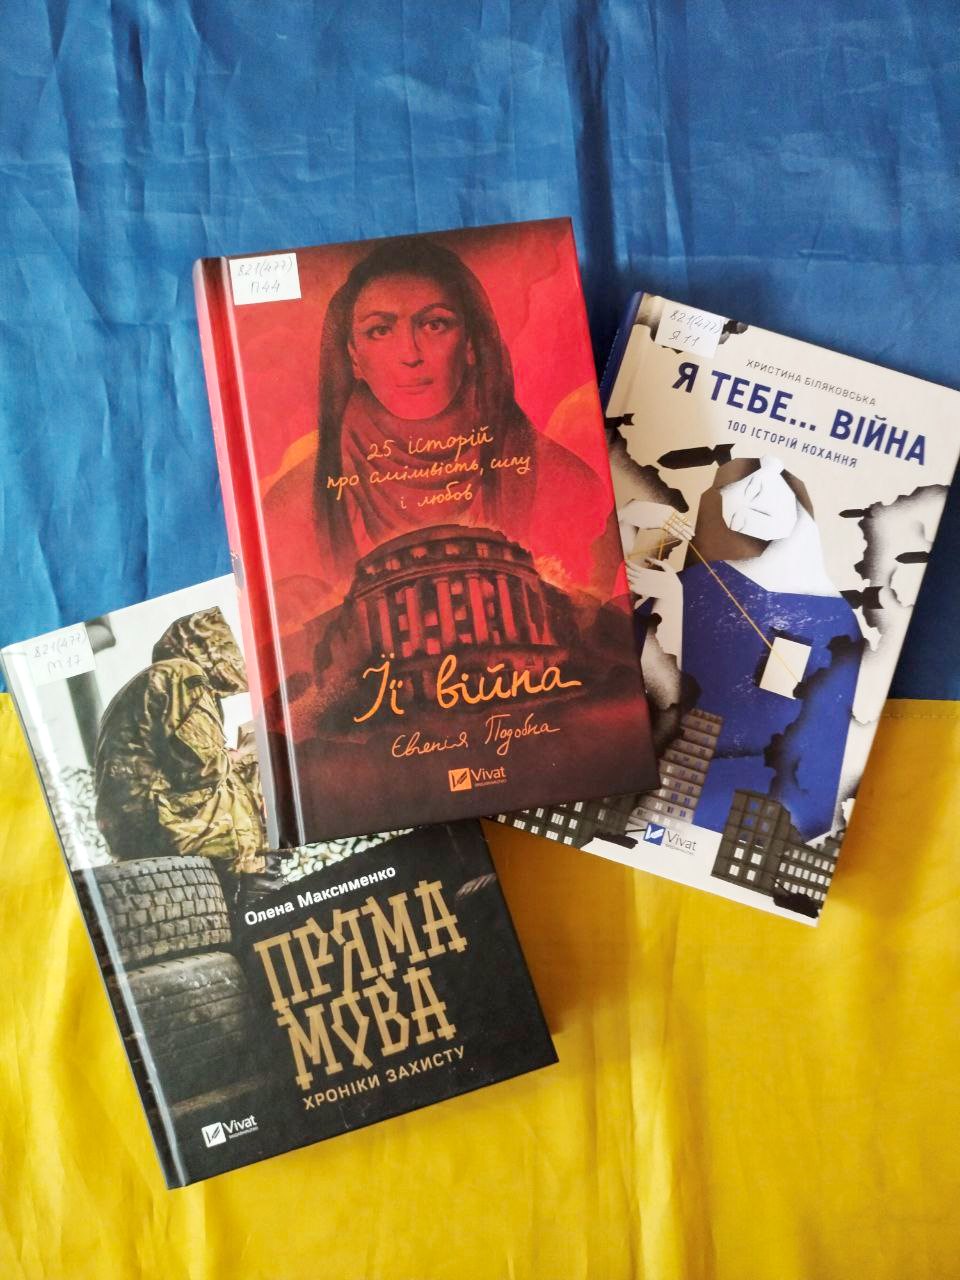 ТОП-3 книги об украинских реалиях от Библиотеки на Шевченко